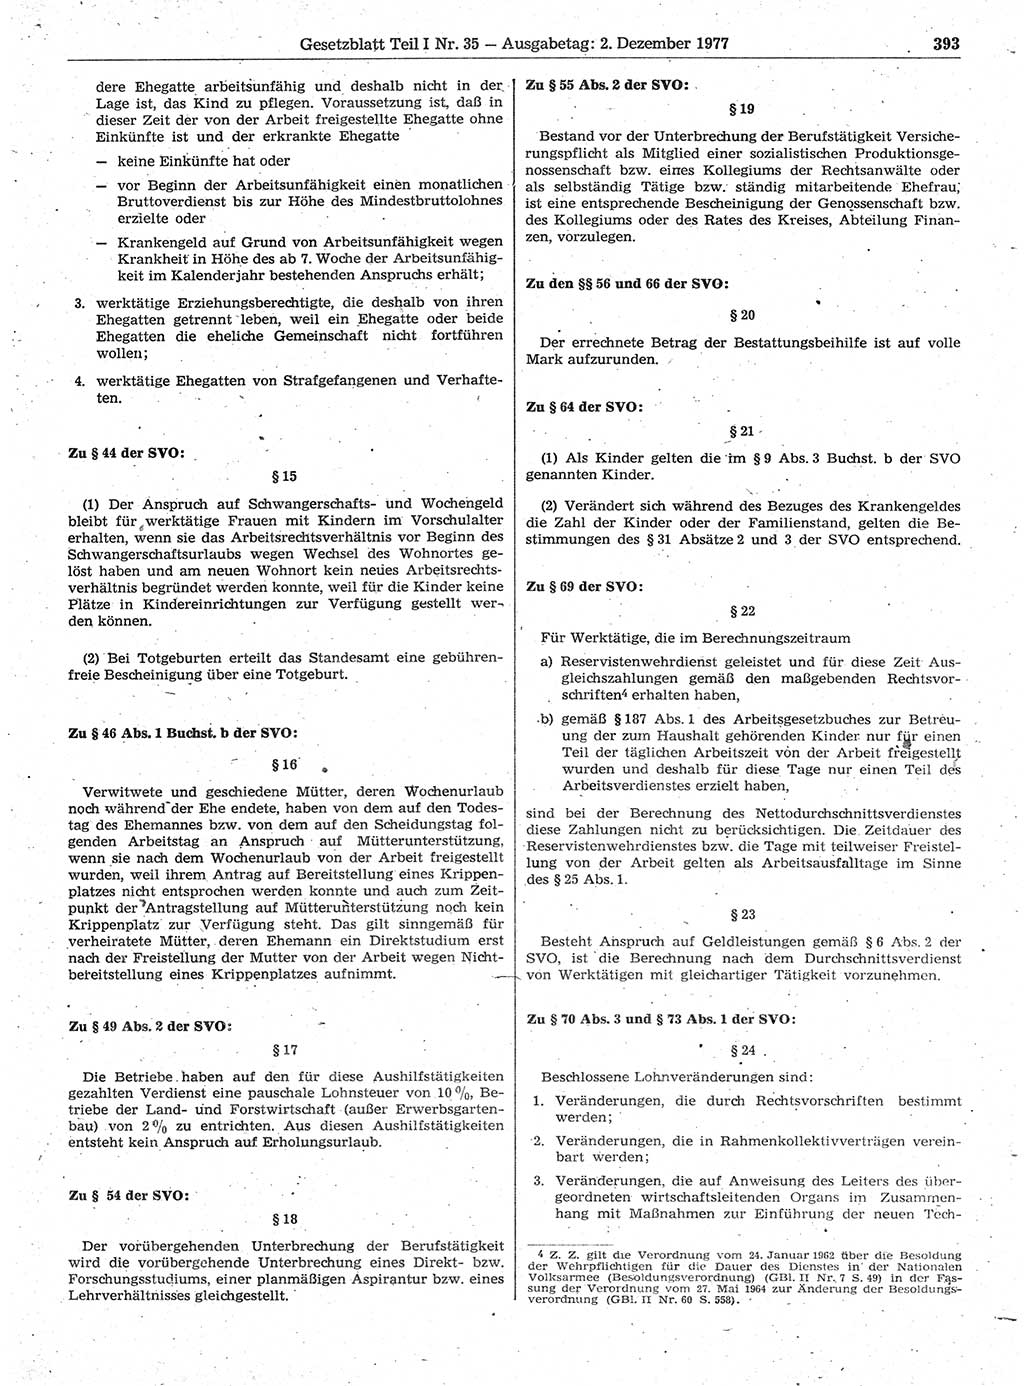 Gesetzblatt (GBl.) der Deutschen Demokratischen Republik (DDR) Teil Ⅰ 1977, Seite 393 (GBl. DDR Ⅰ 1977, S. 393)